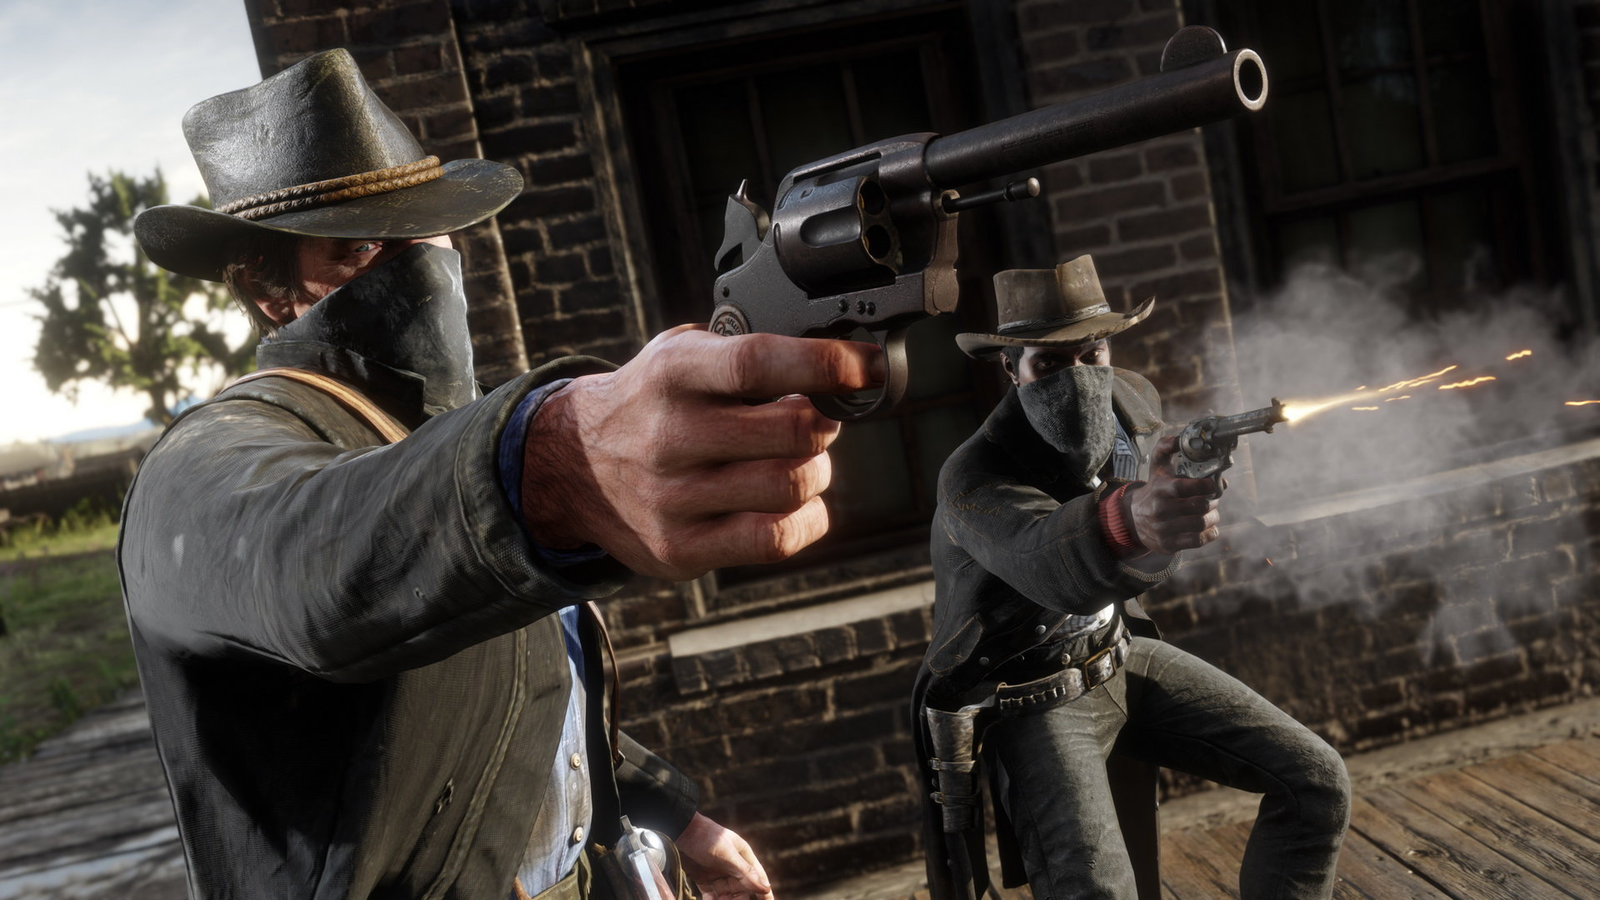 Red Dead Redemption 2 gets DLSS update » YugaTech